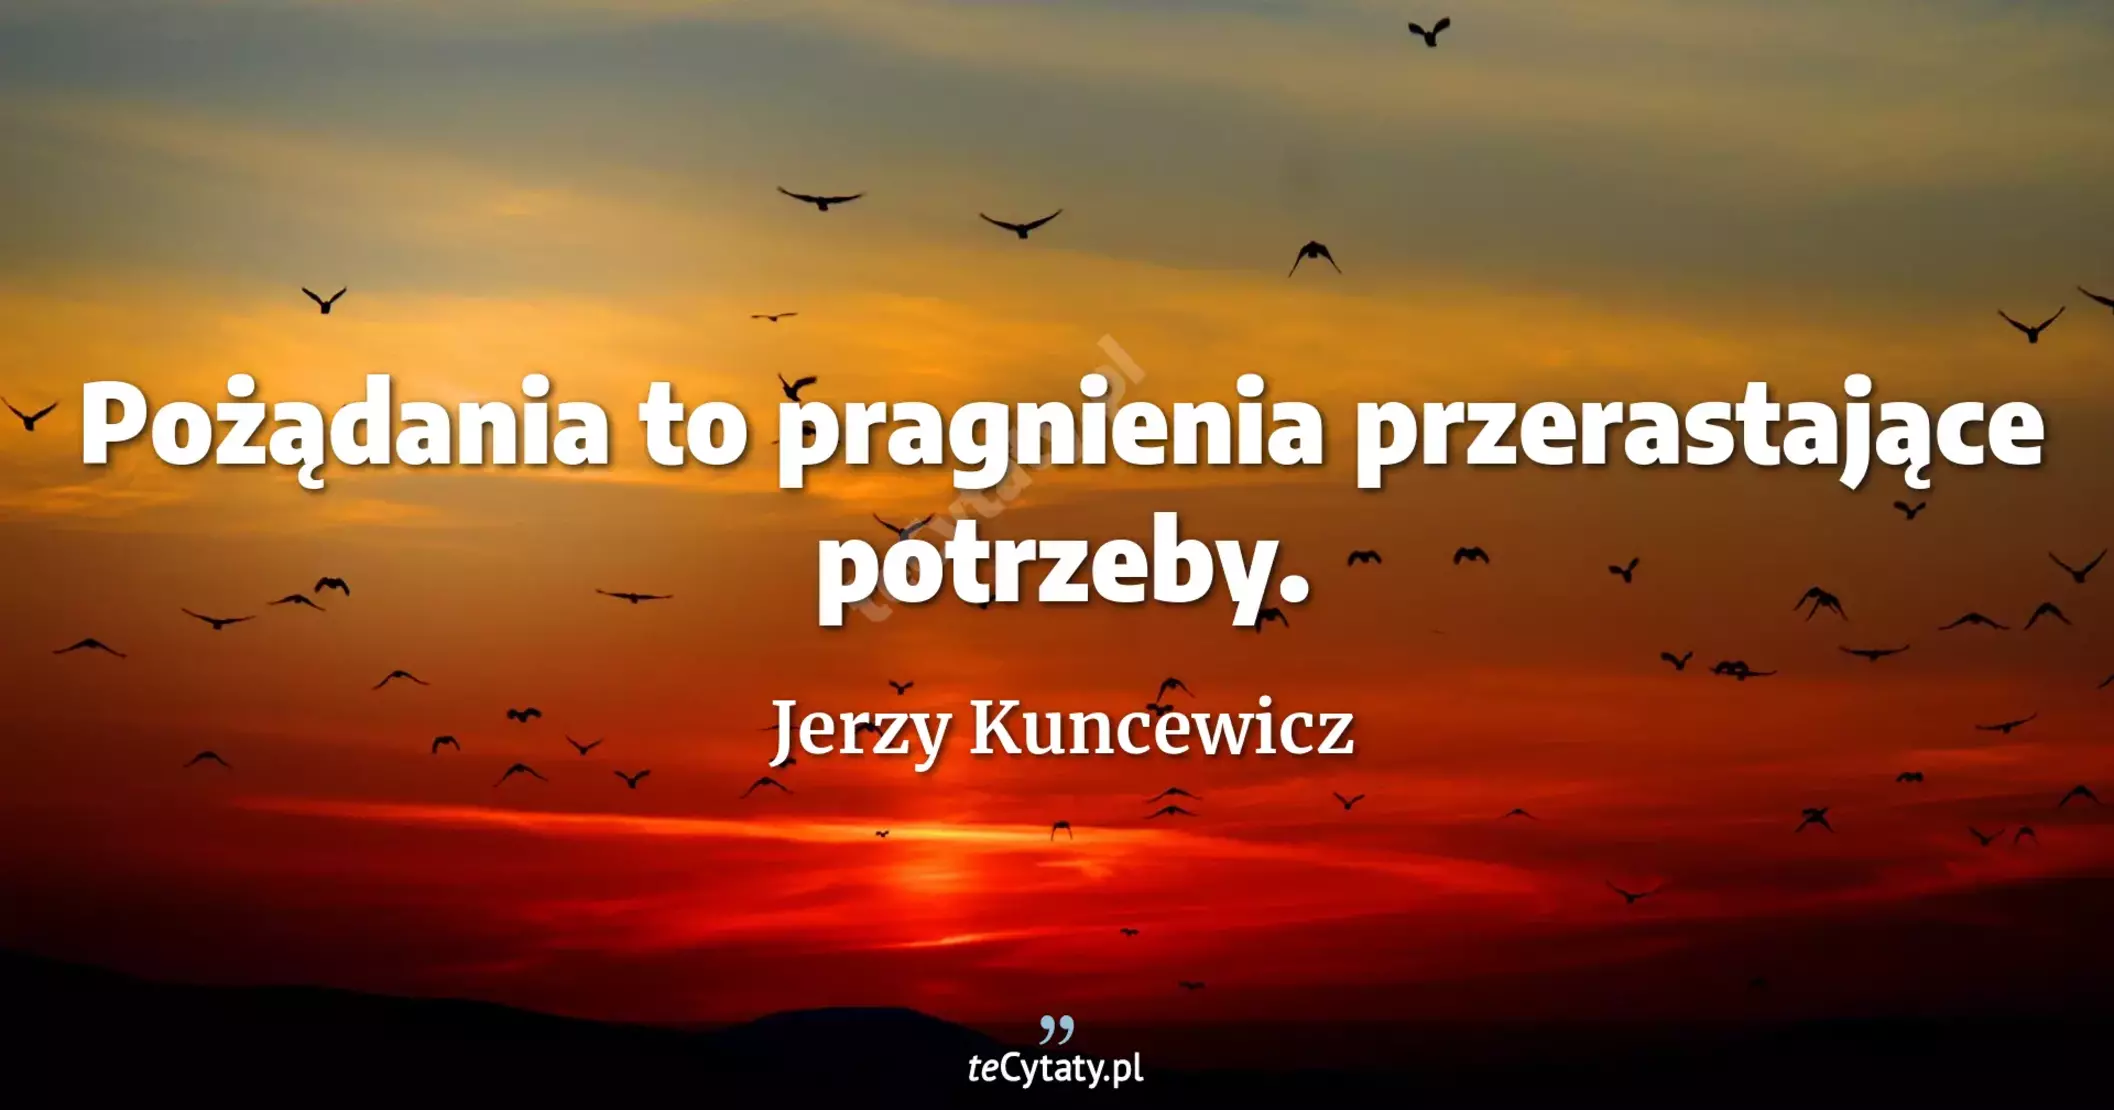 Pożądania to pragnienia przerastające potrzeby. - Jerzy Kuncewicz